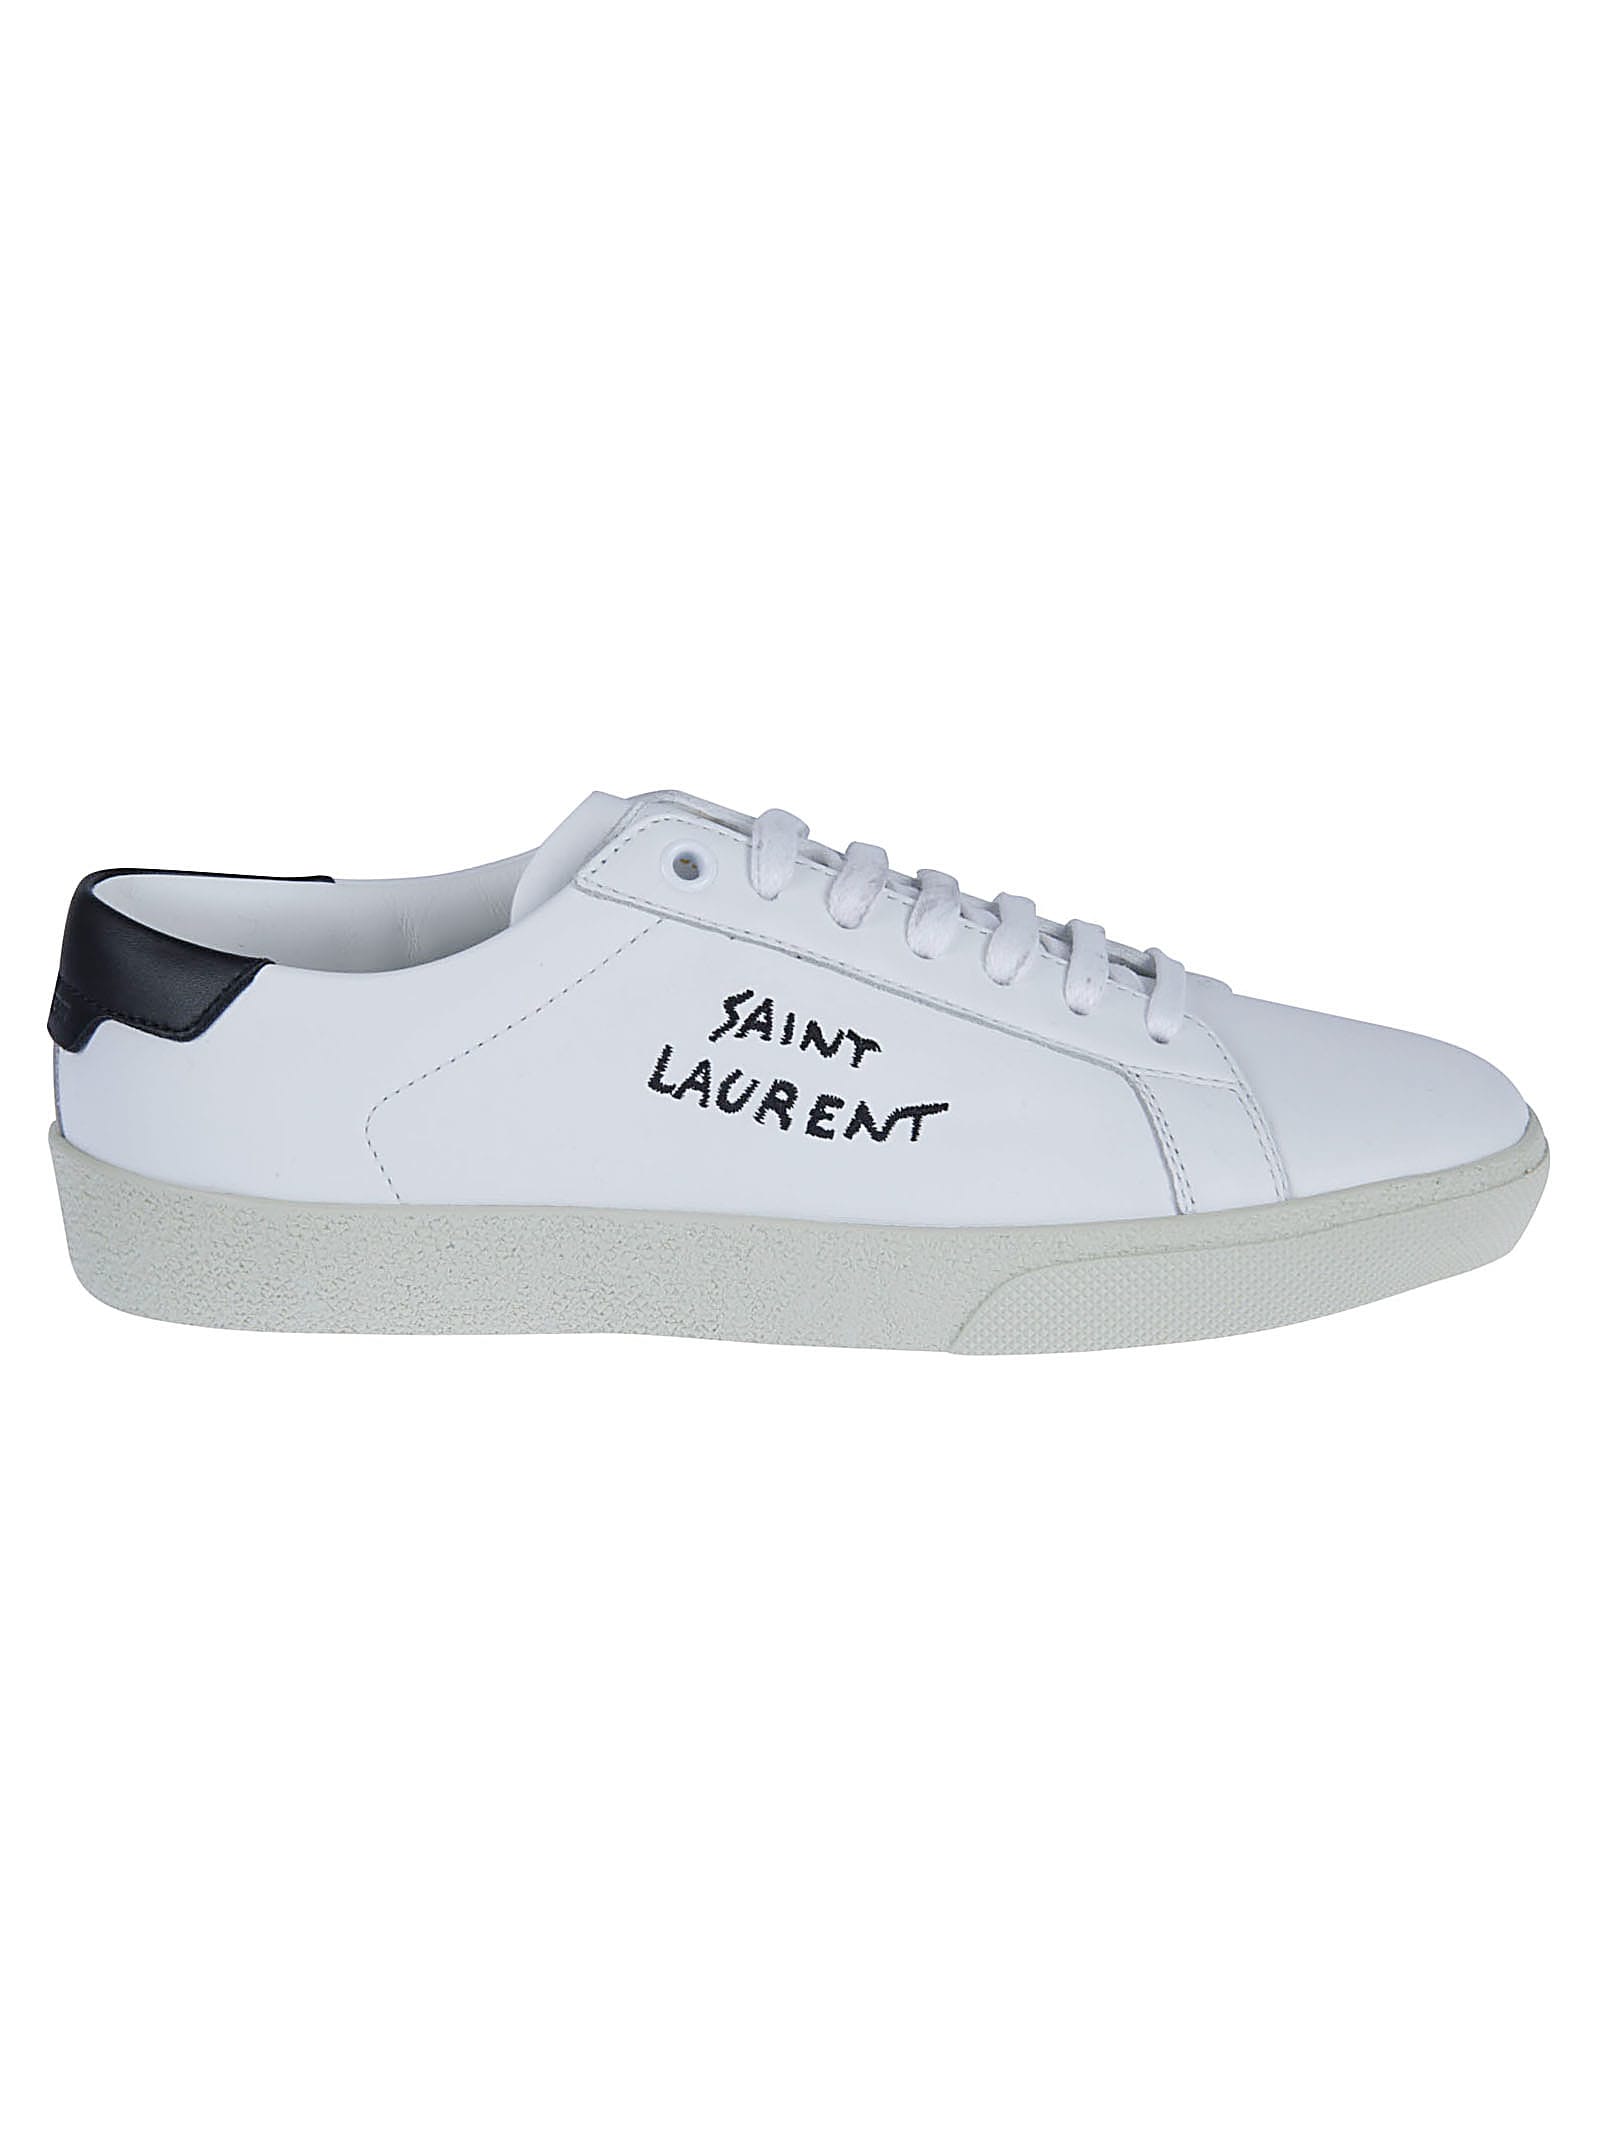 Saint Laurent Signature Sneakers